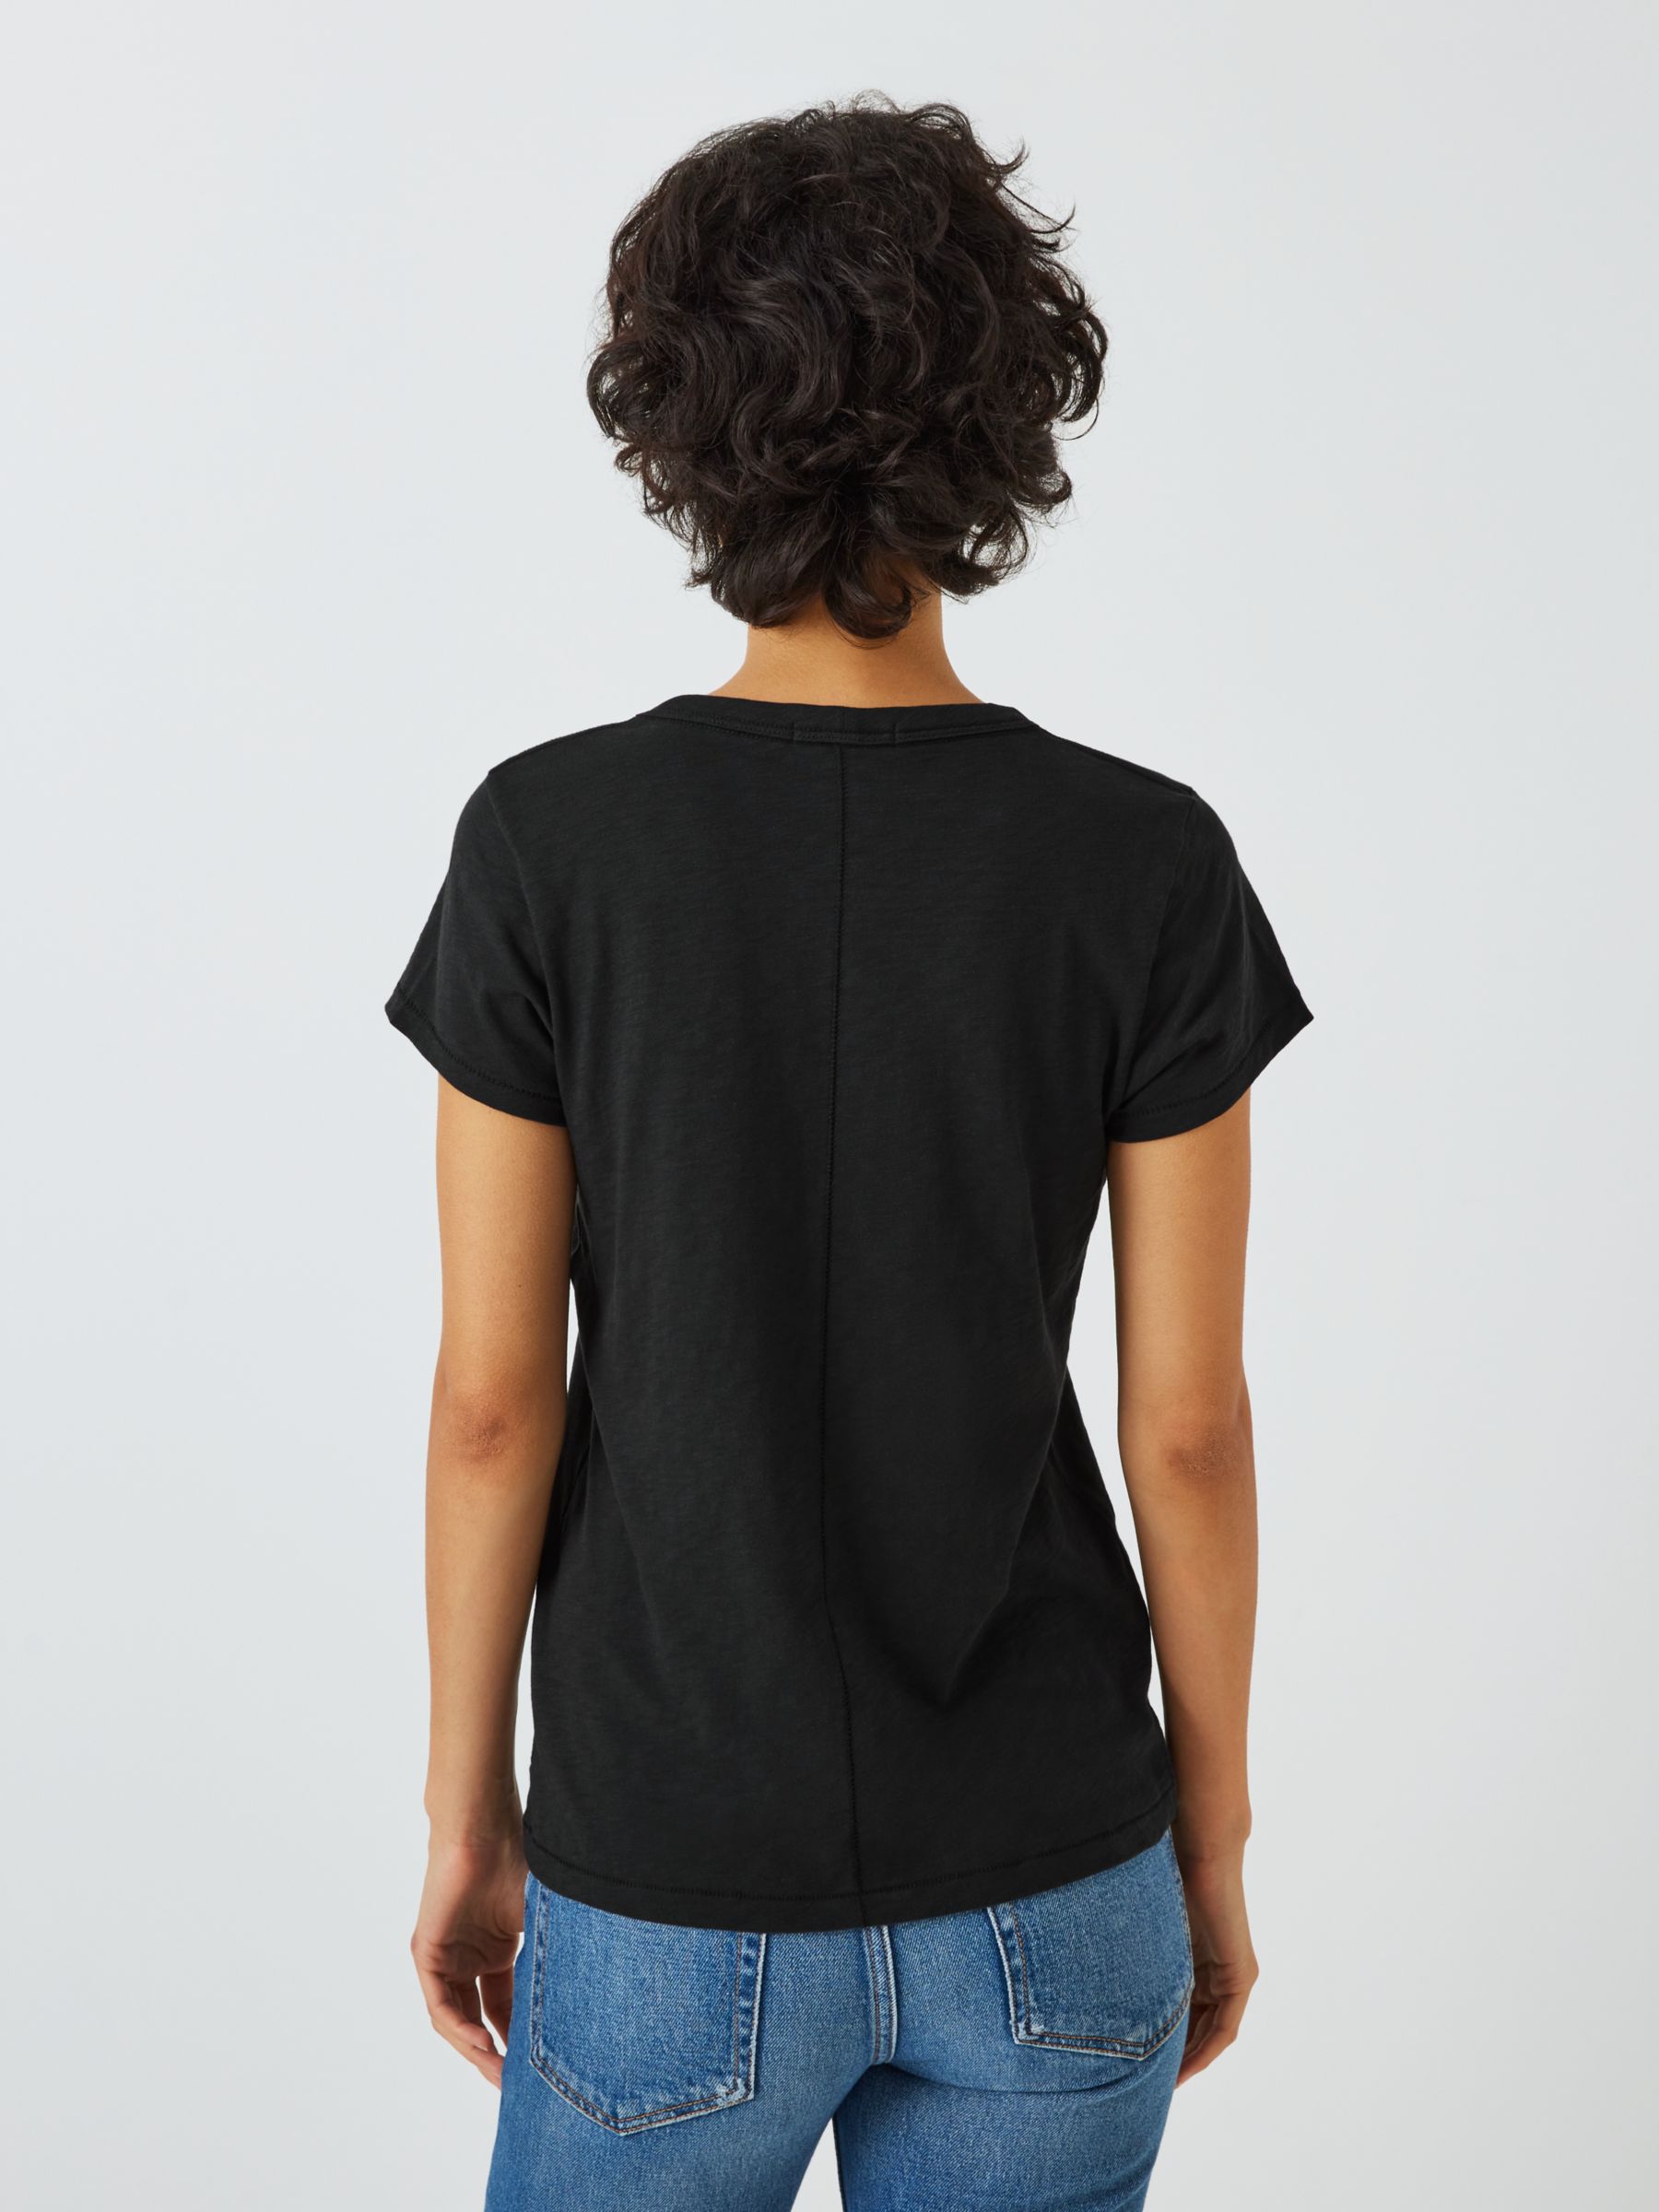 rag & bone The Slub Pima Cotton T-Shirt, Black, XS